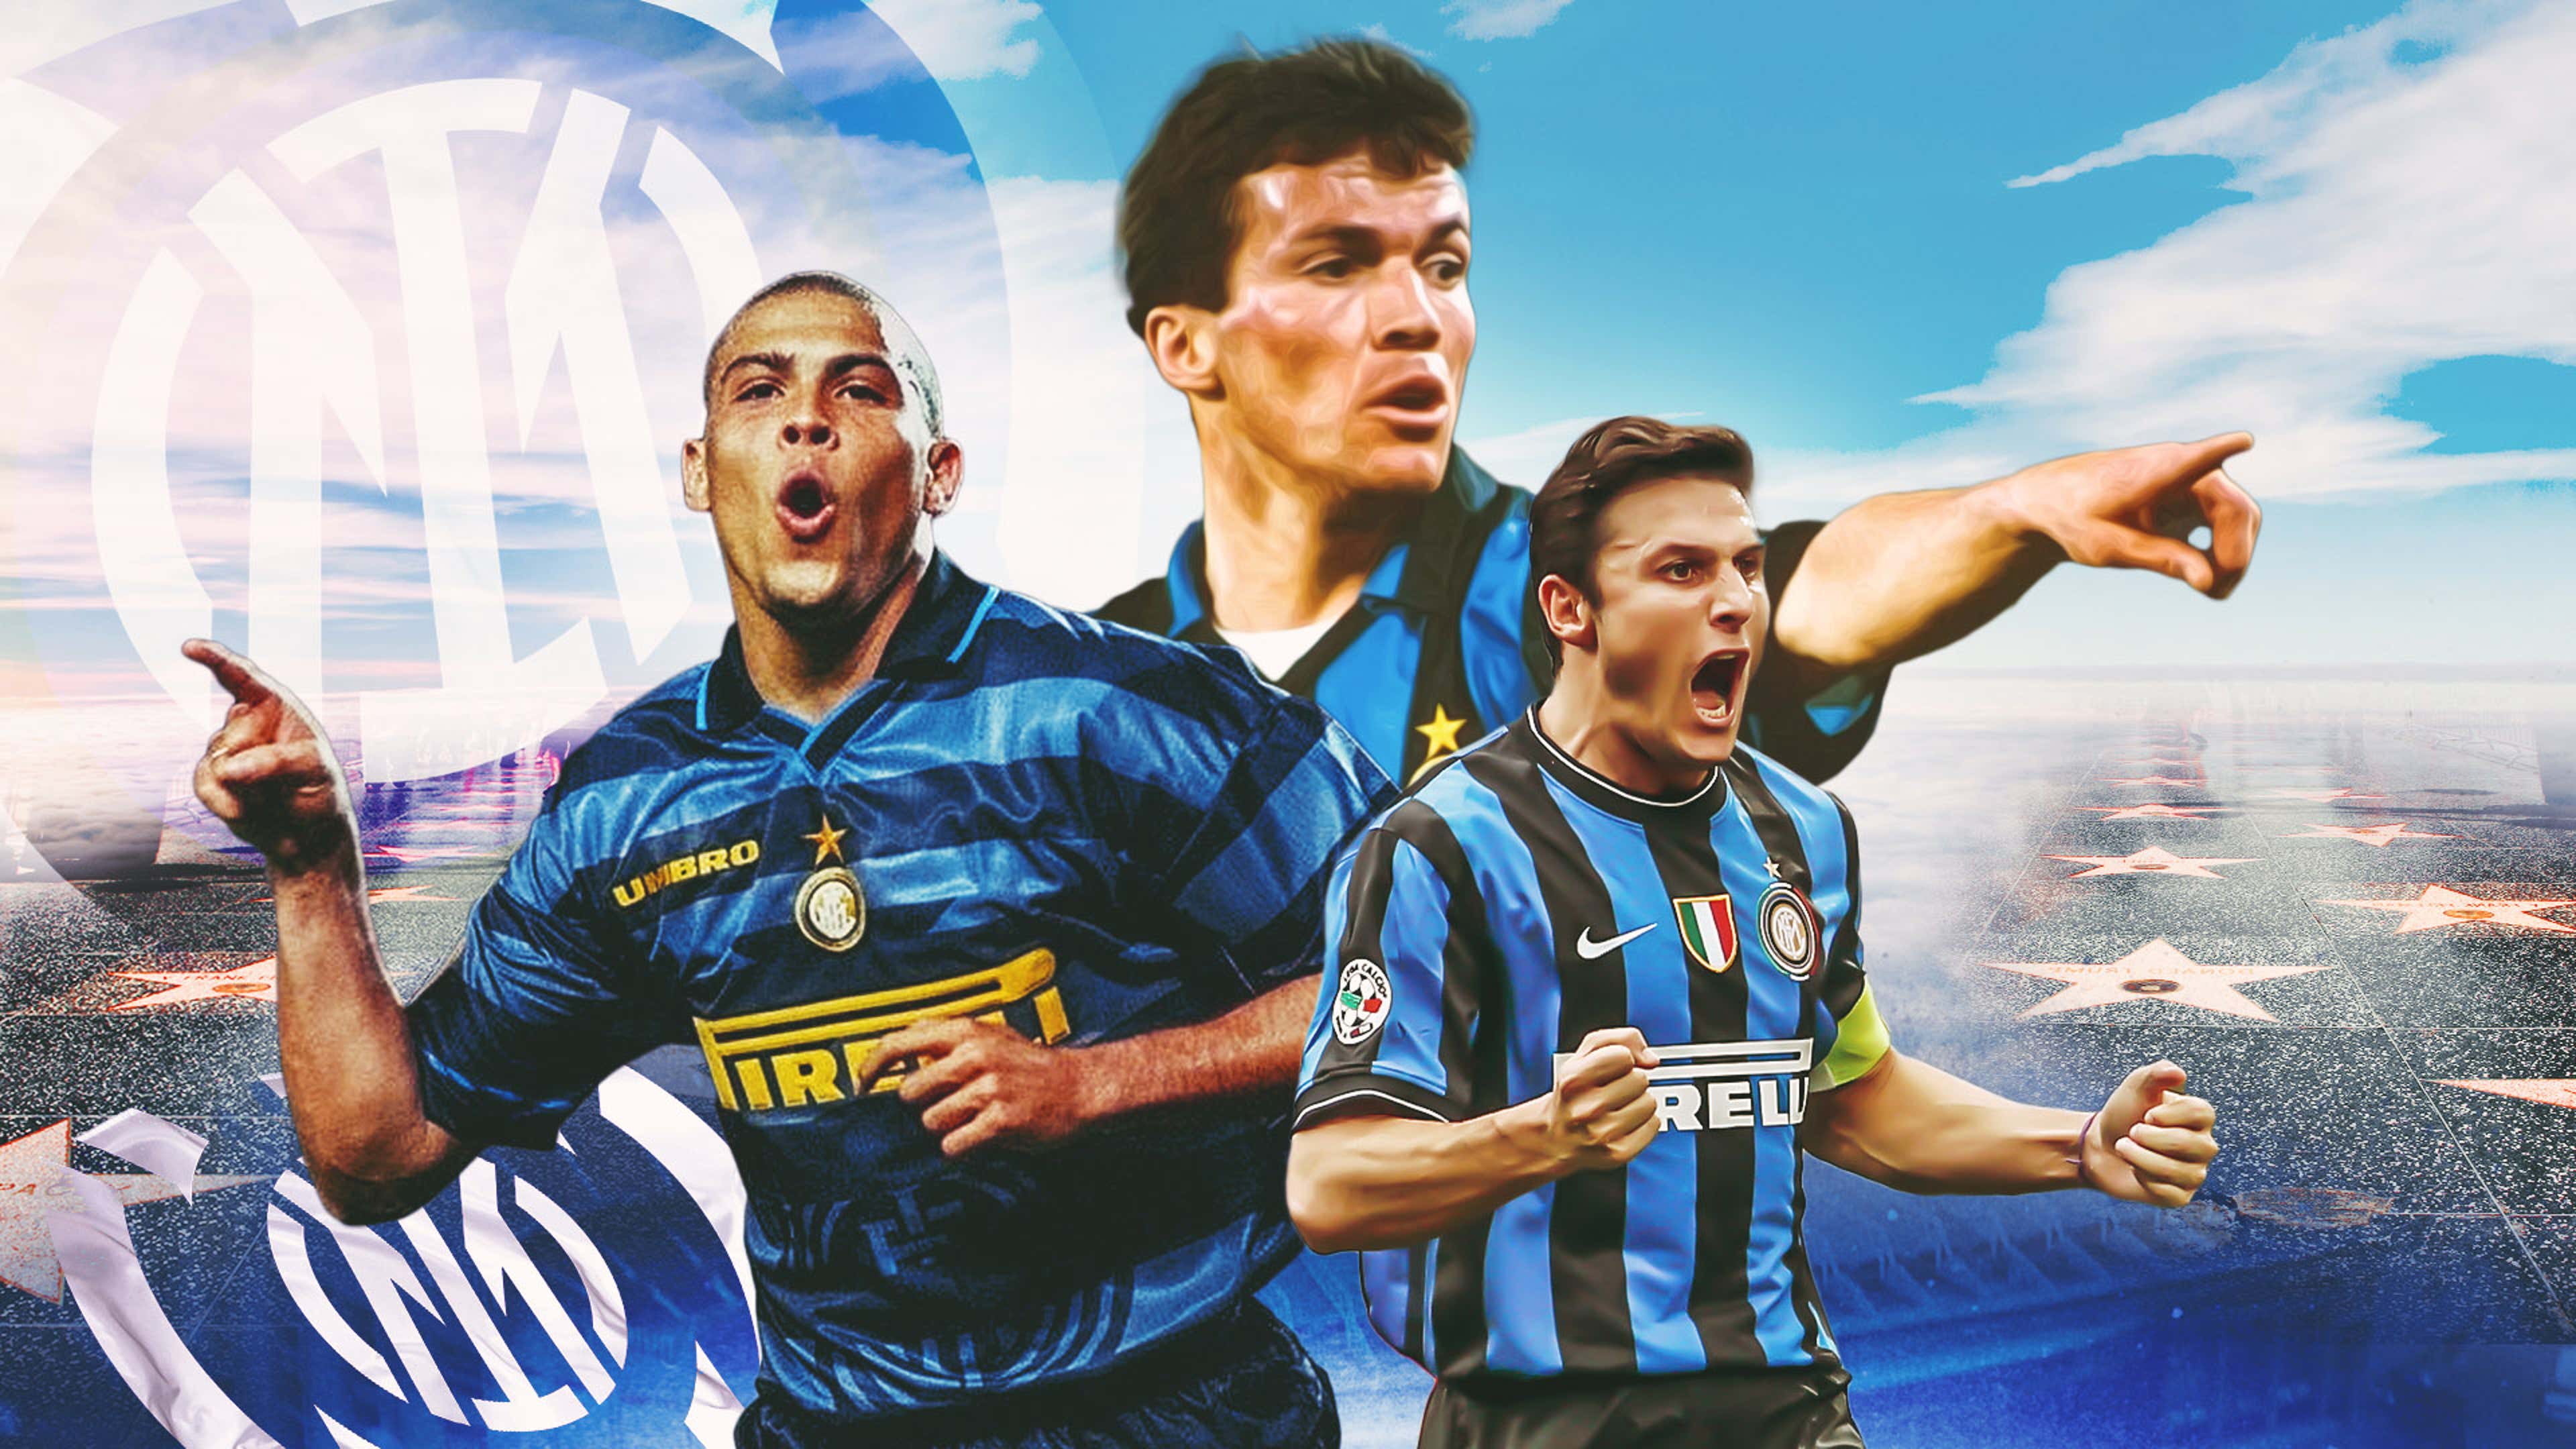 Football Club Internazionale Milano 2011-2012 - Wikipedia